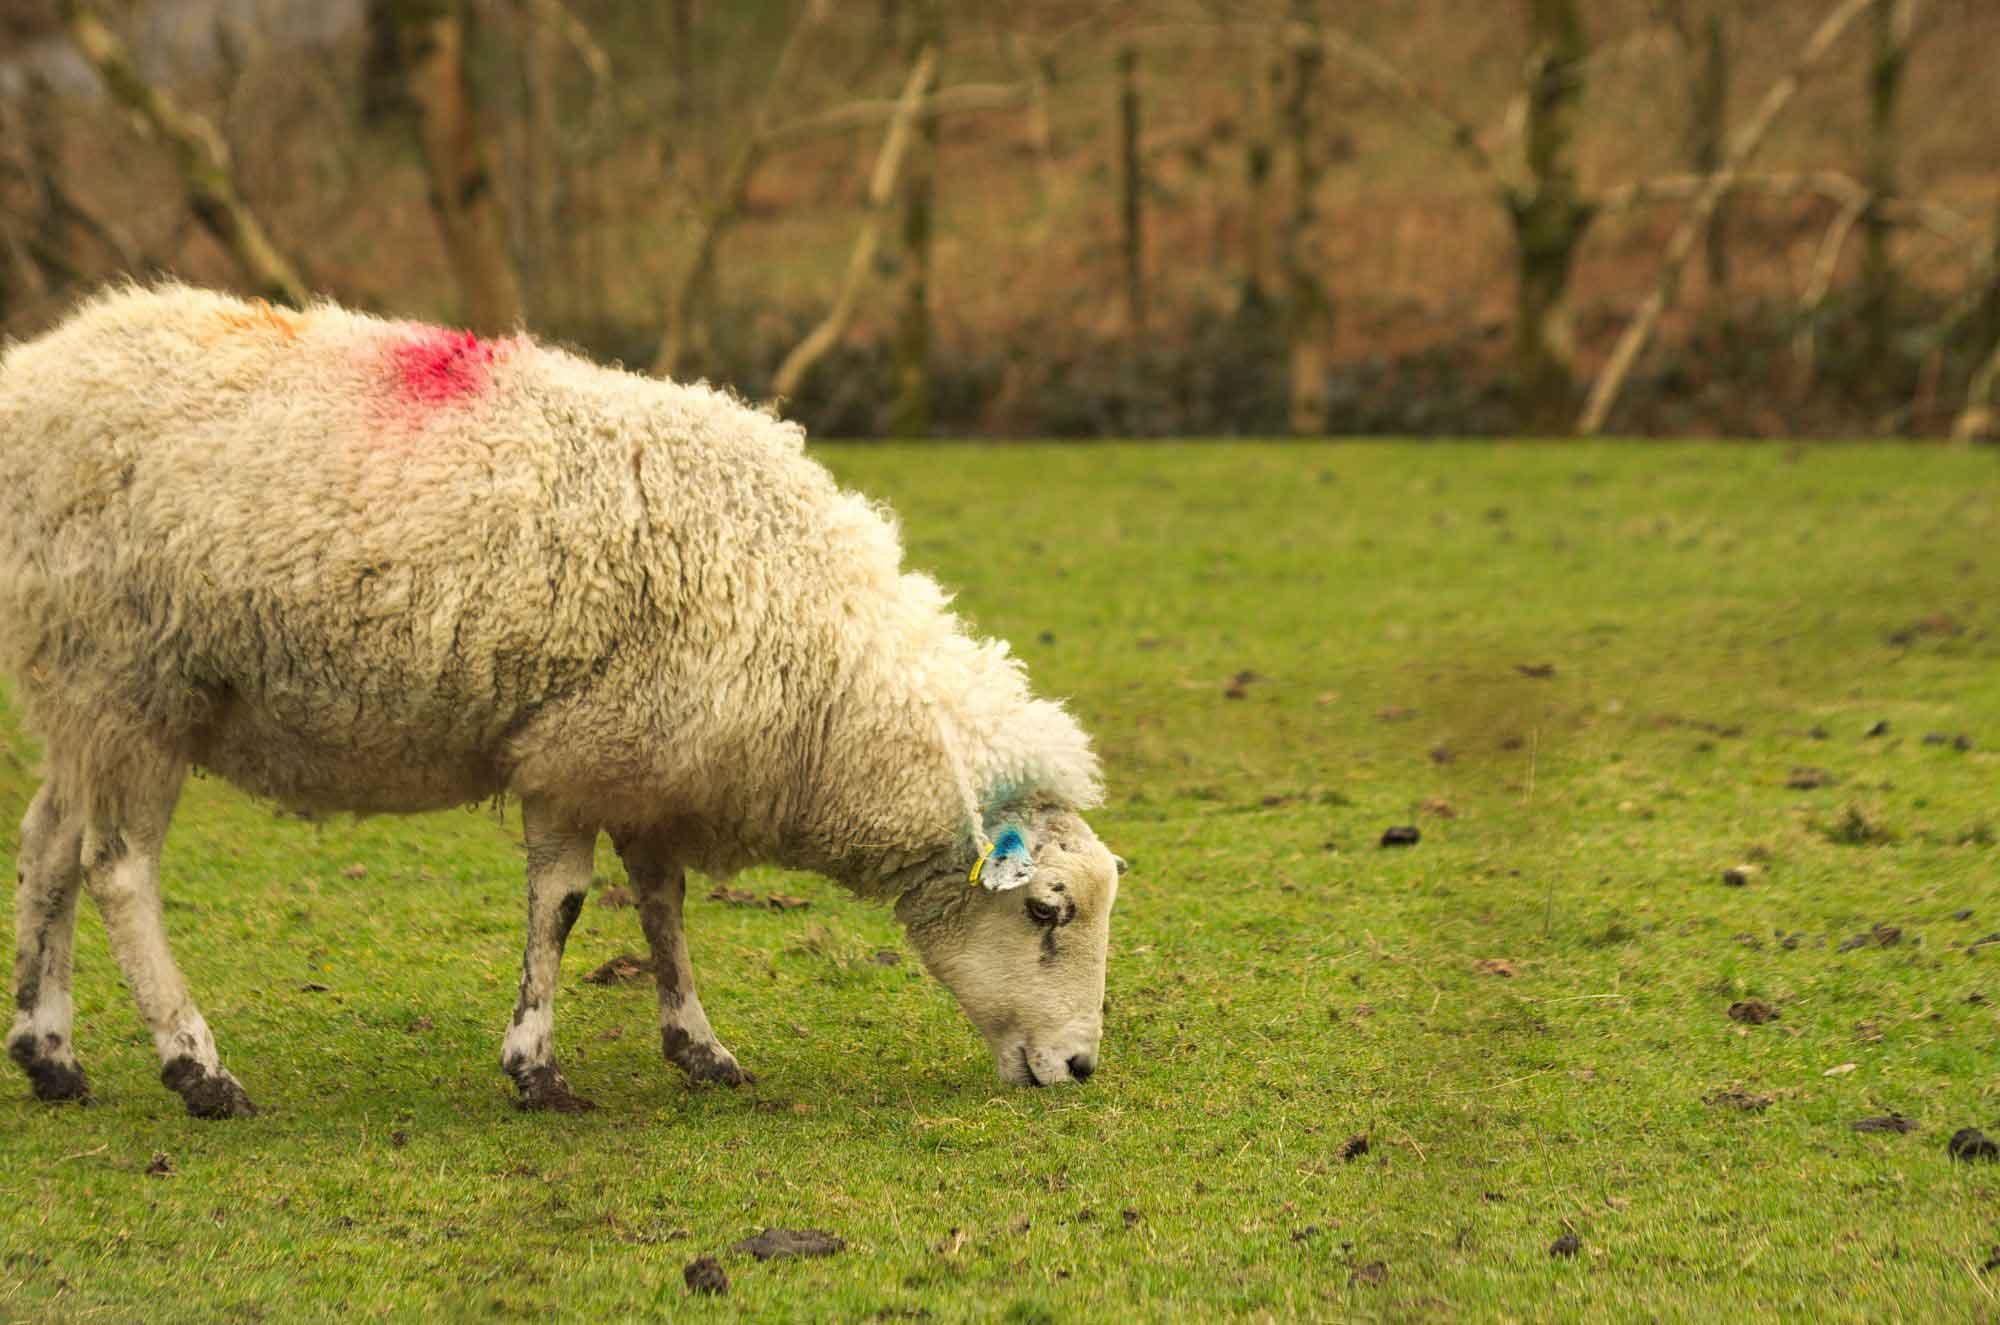 A sheep grazing on grass